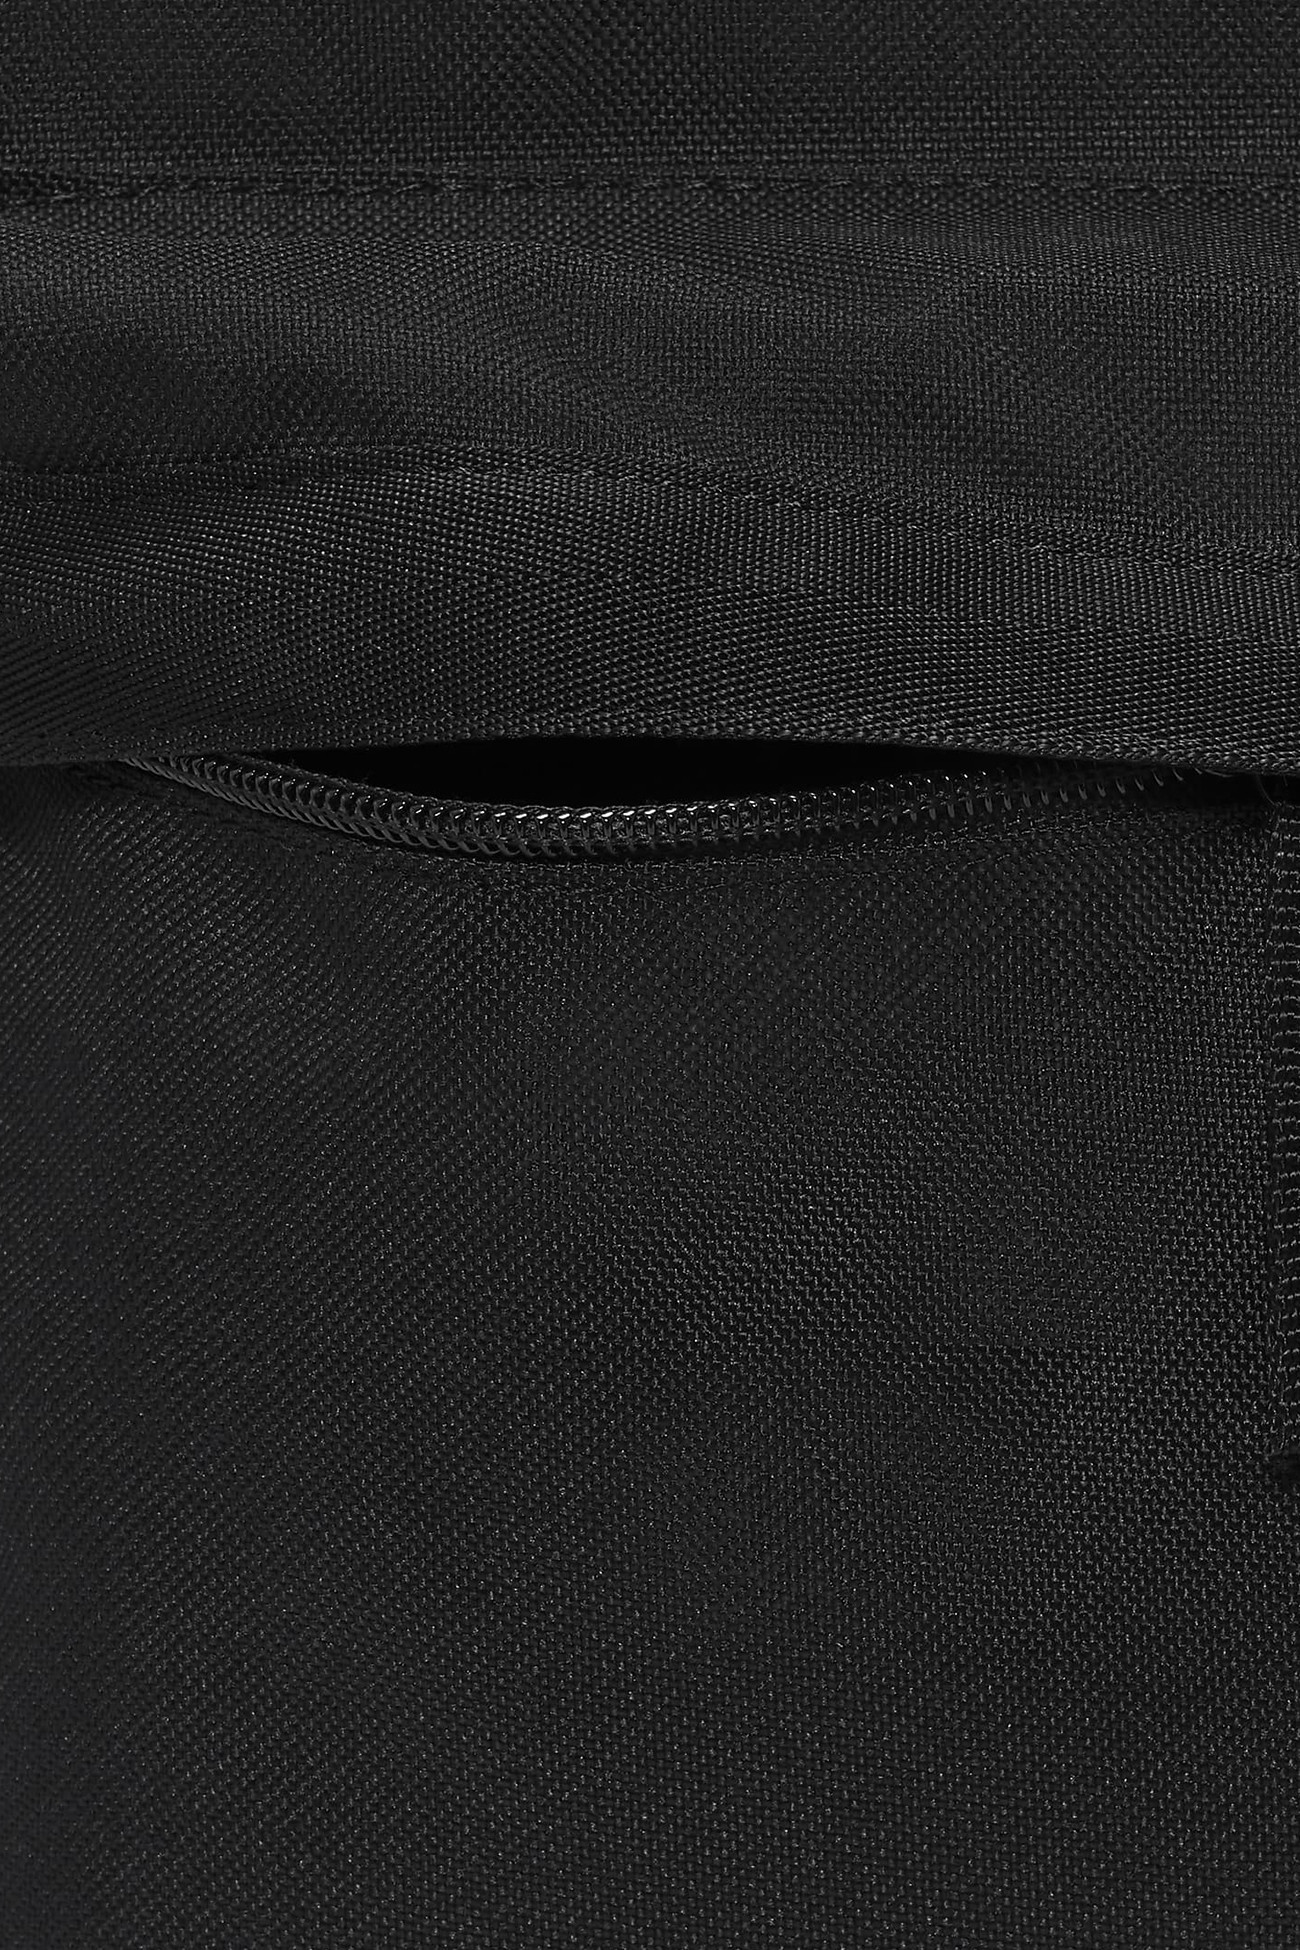 Рюкзак Nike Nk Backpack Hbr Grx чорний DQ3432-010 изображение 6